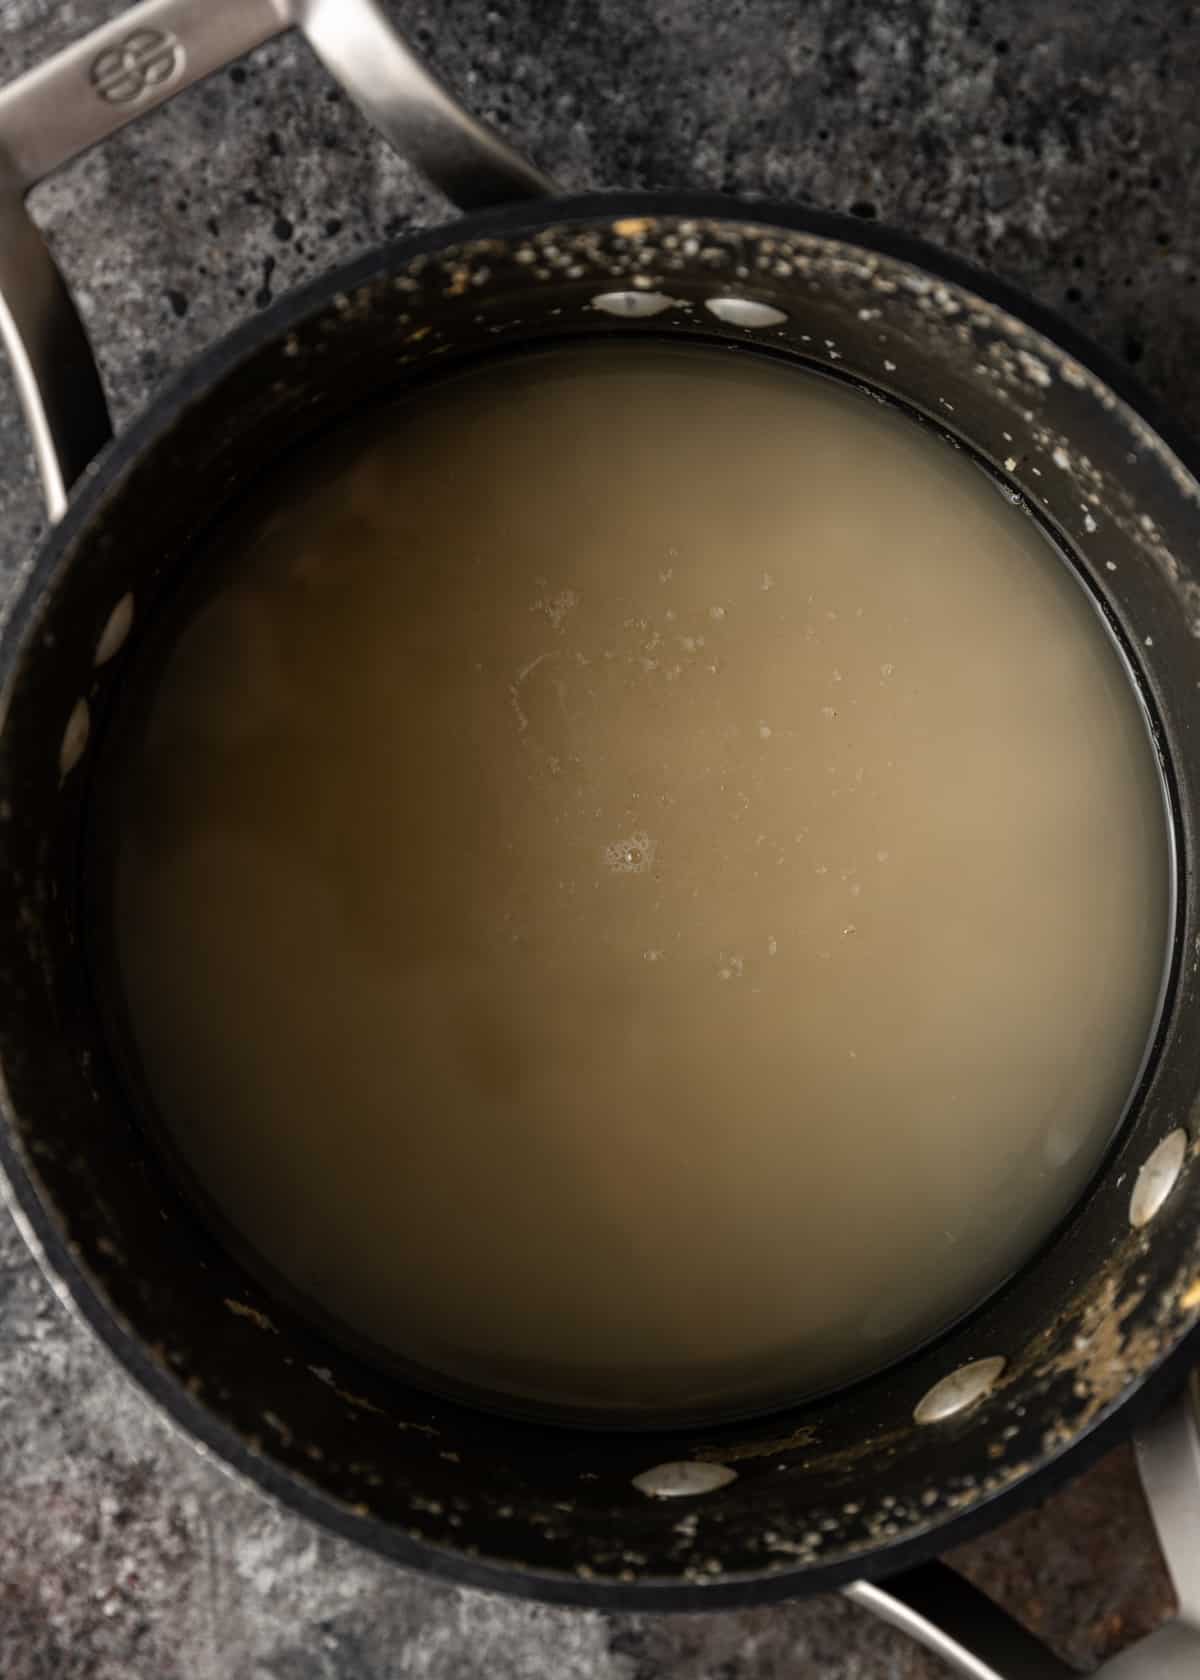 liquid in a pan